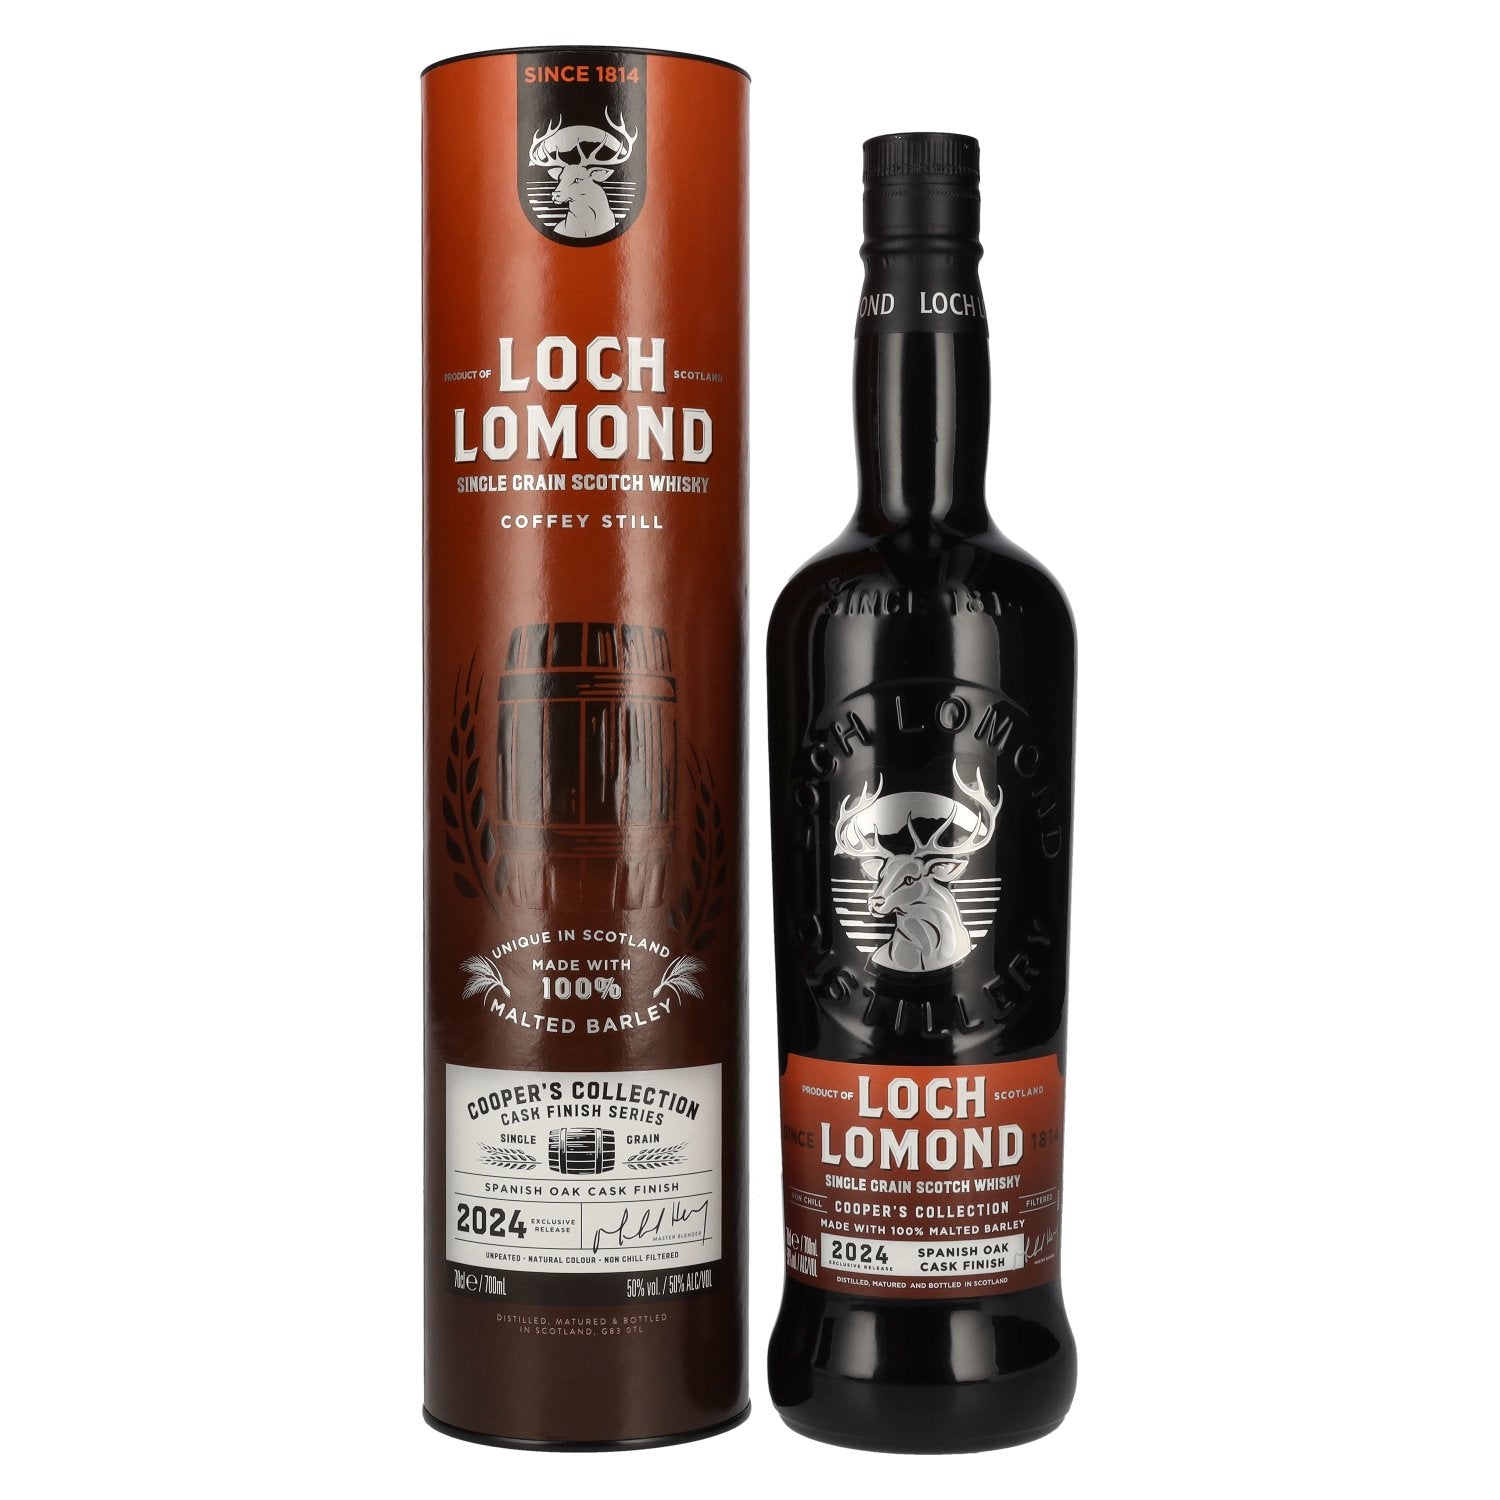 Loch Lomond COOPER COLLECTION Spanish Oak Cask Single Grain Scotch Whisky 50% Vol. 0,7l in Giftbox